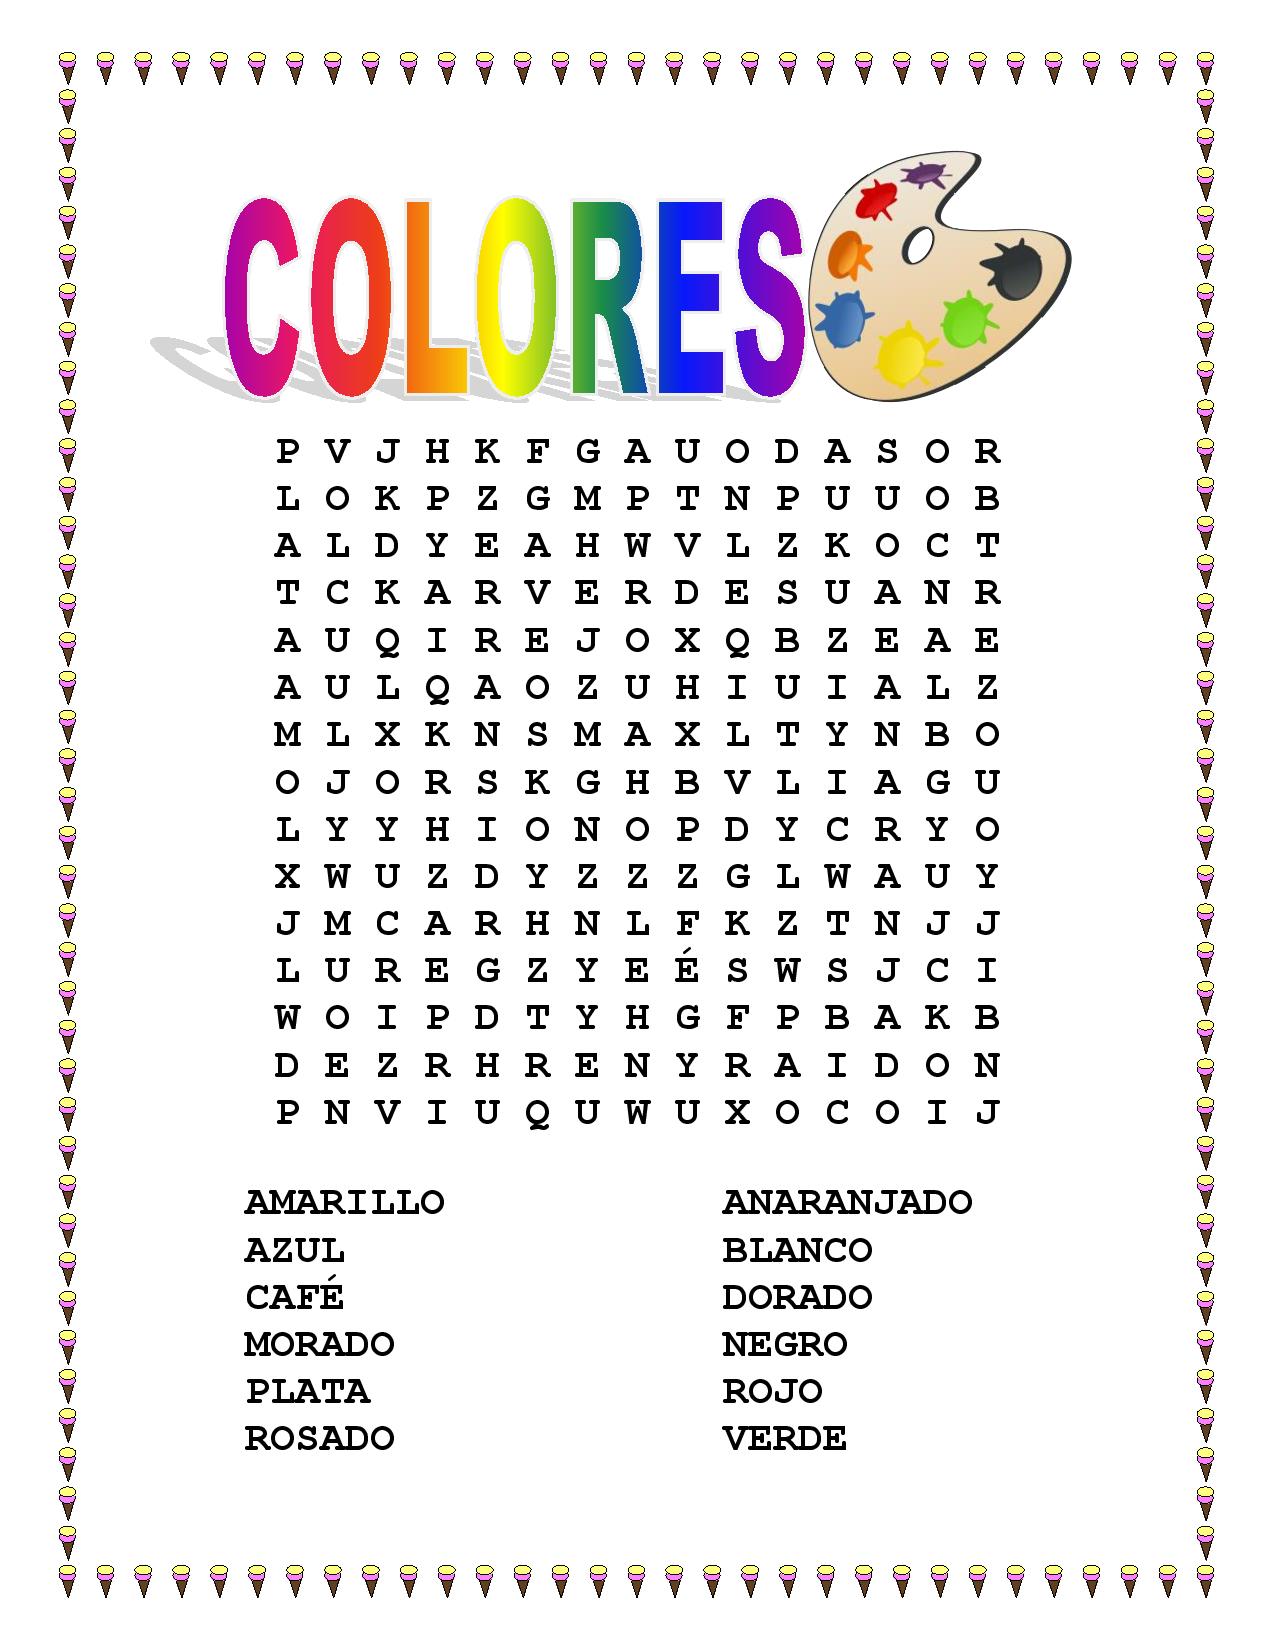 MISCELLANEOUS LESSON SPANISH COLORS Vocabulary Word Search Colorea